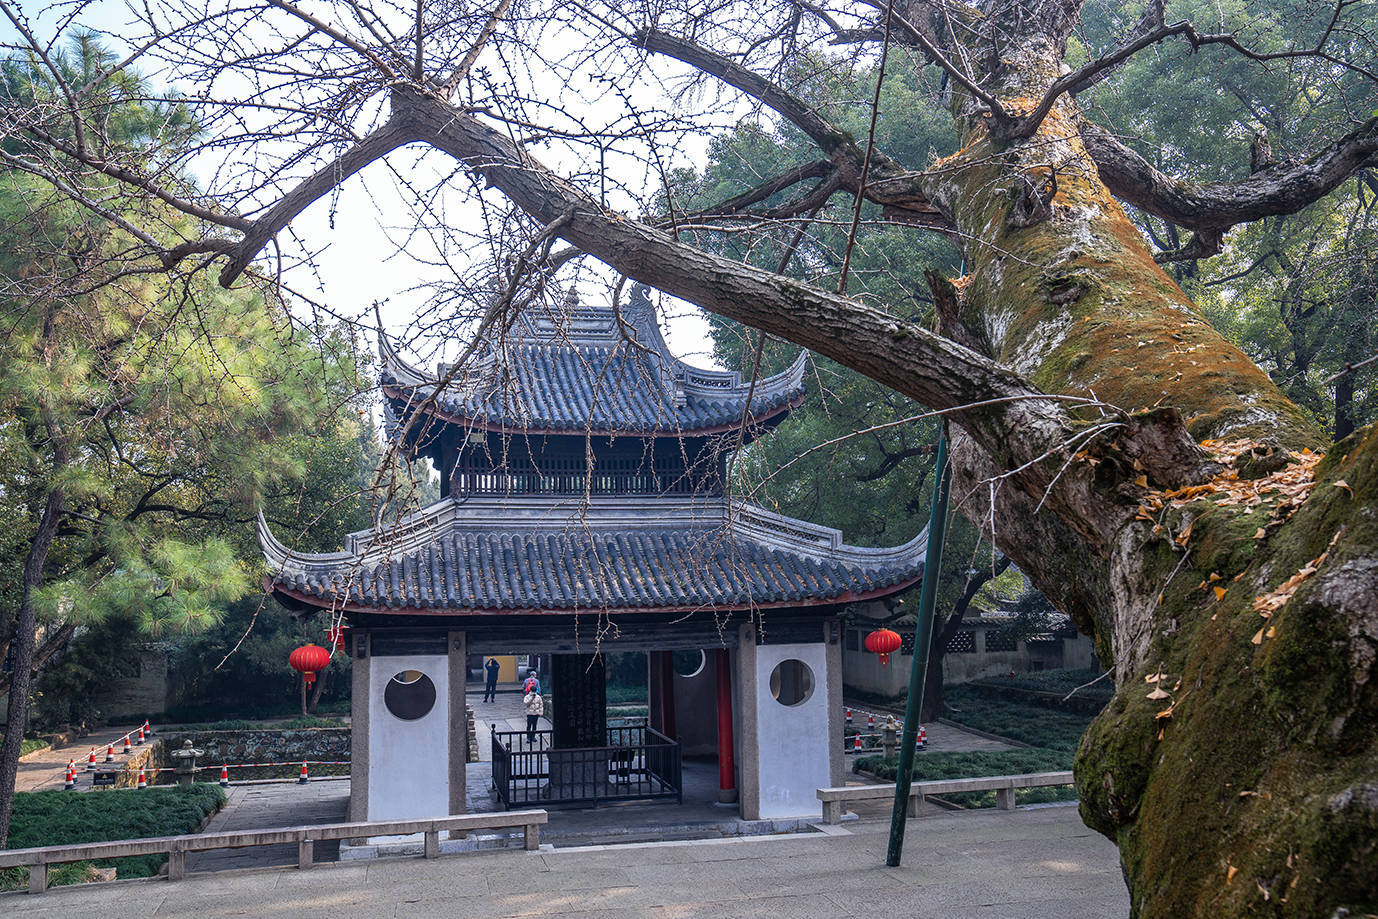 无锡惠山寺庙图片